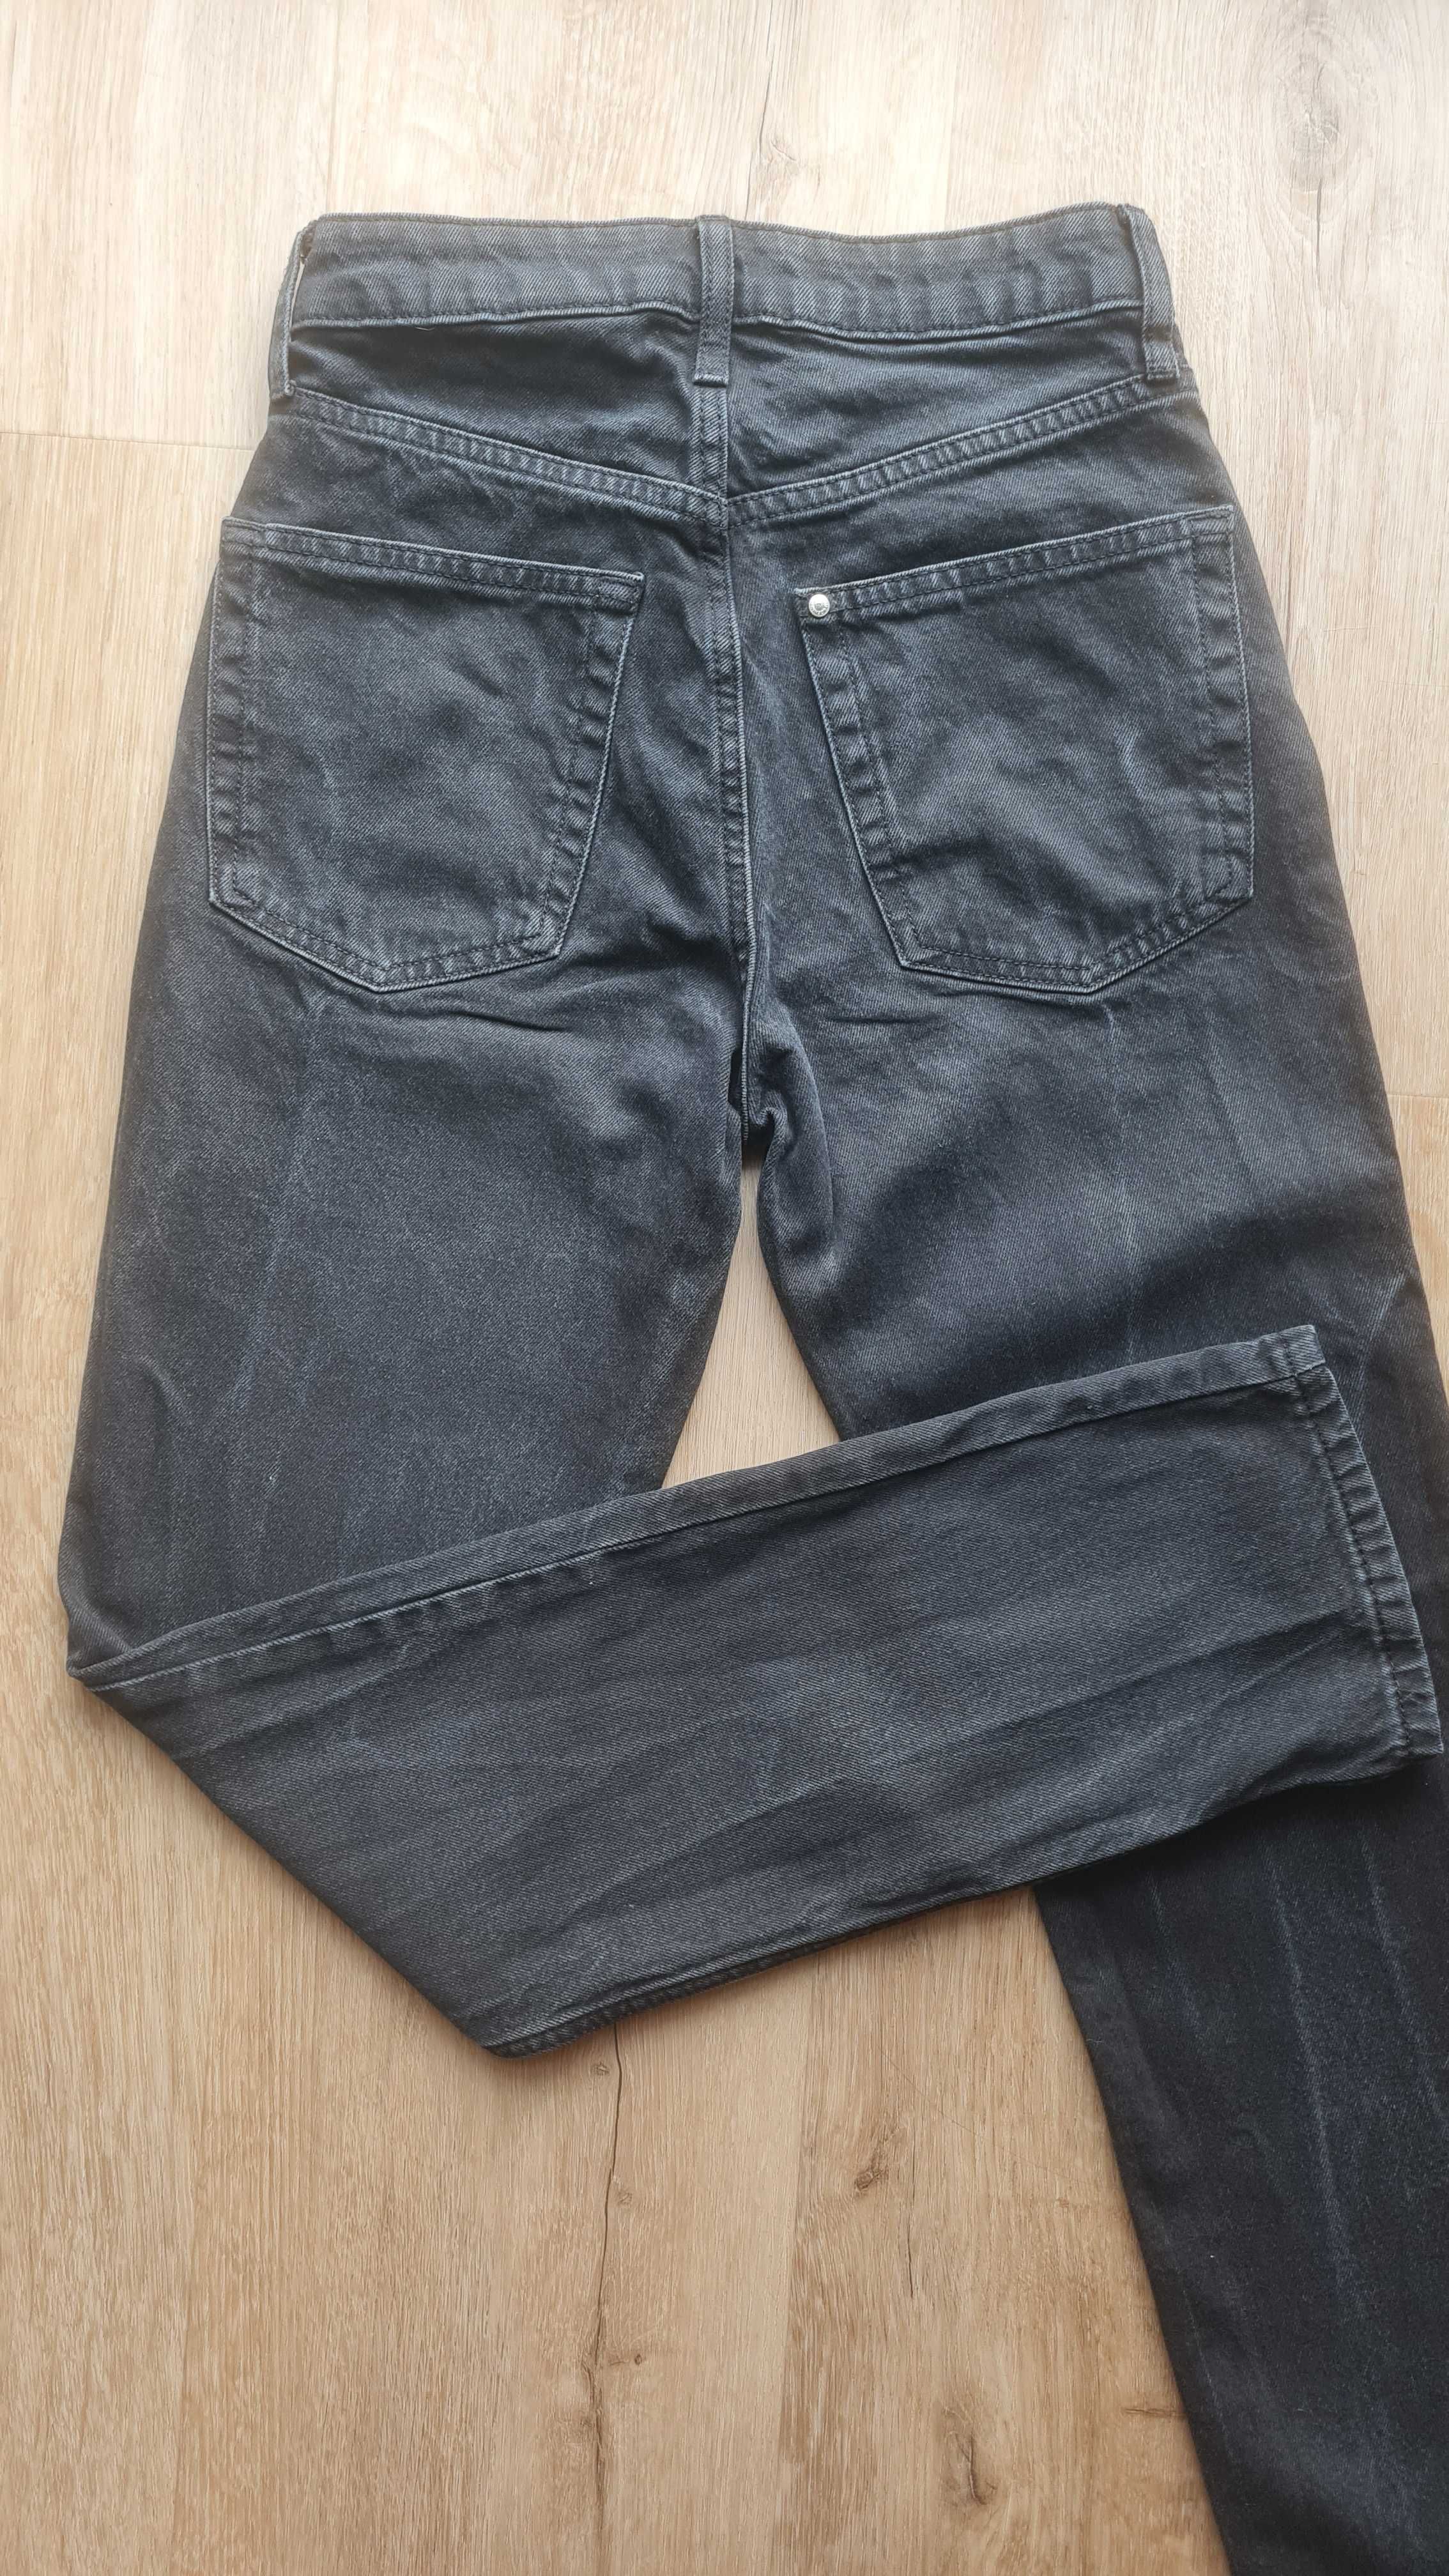 Spodnie jeansowe czarne High Waist Vintage Straight prosta nogawka